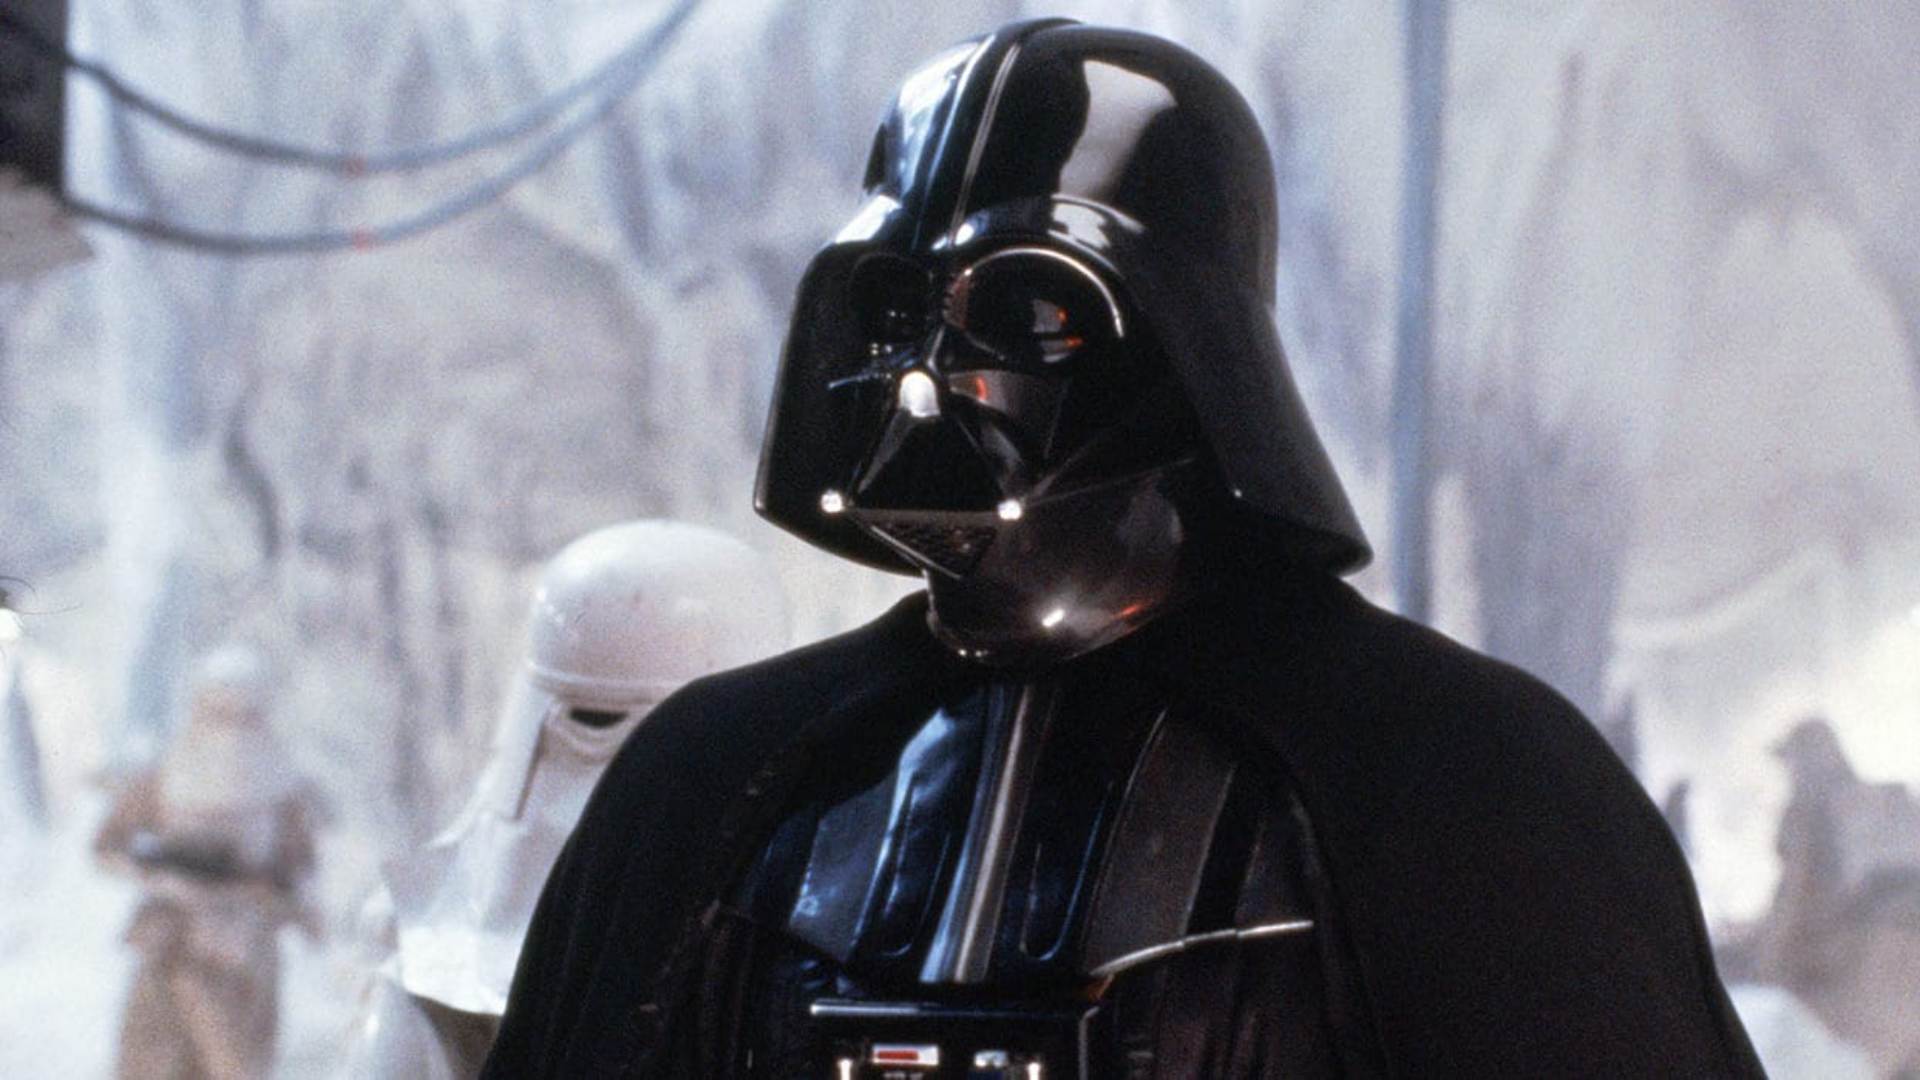 Darth Vader loved villains